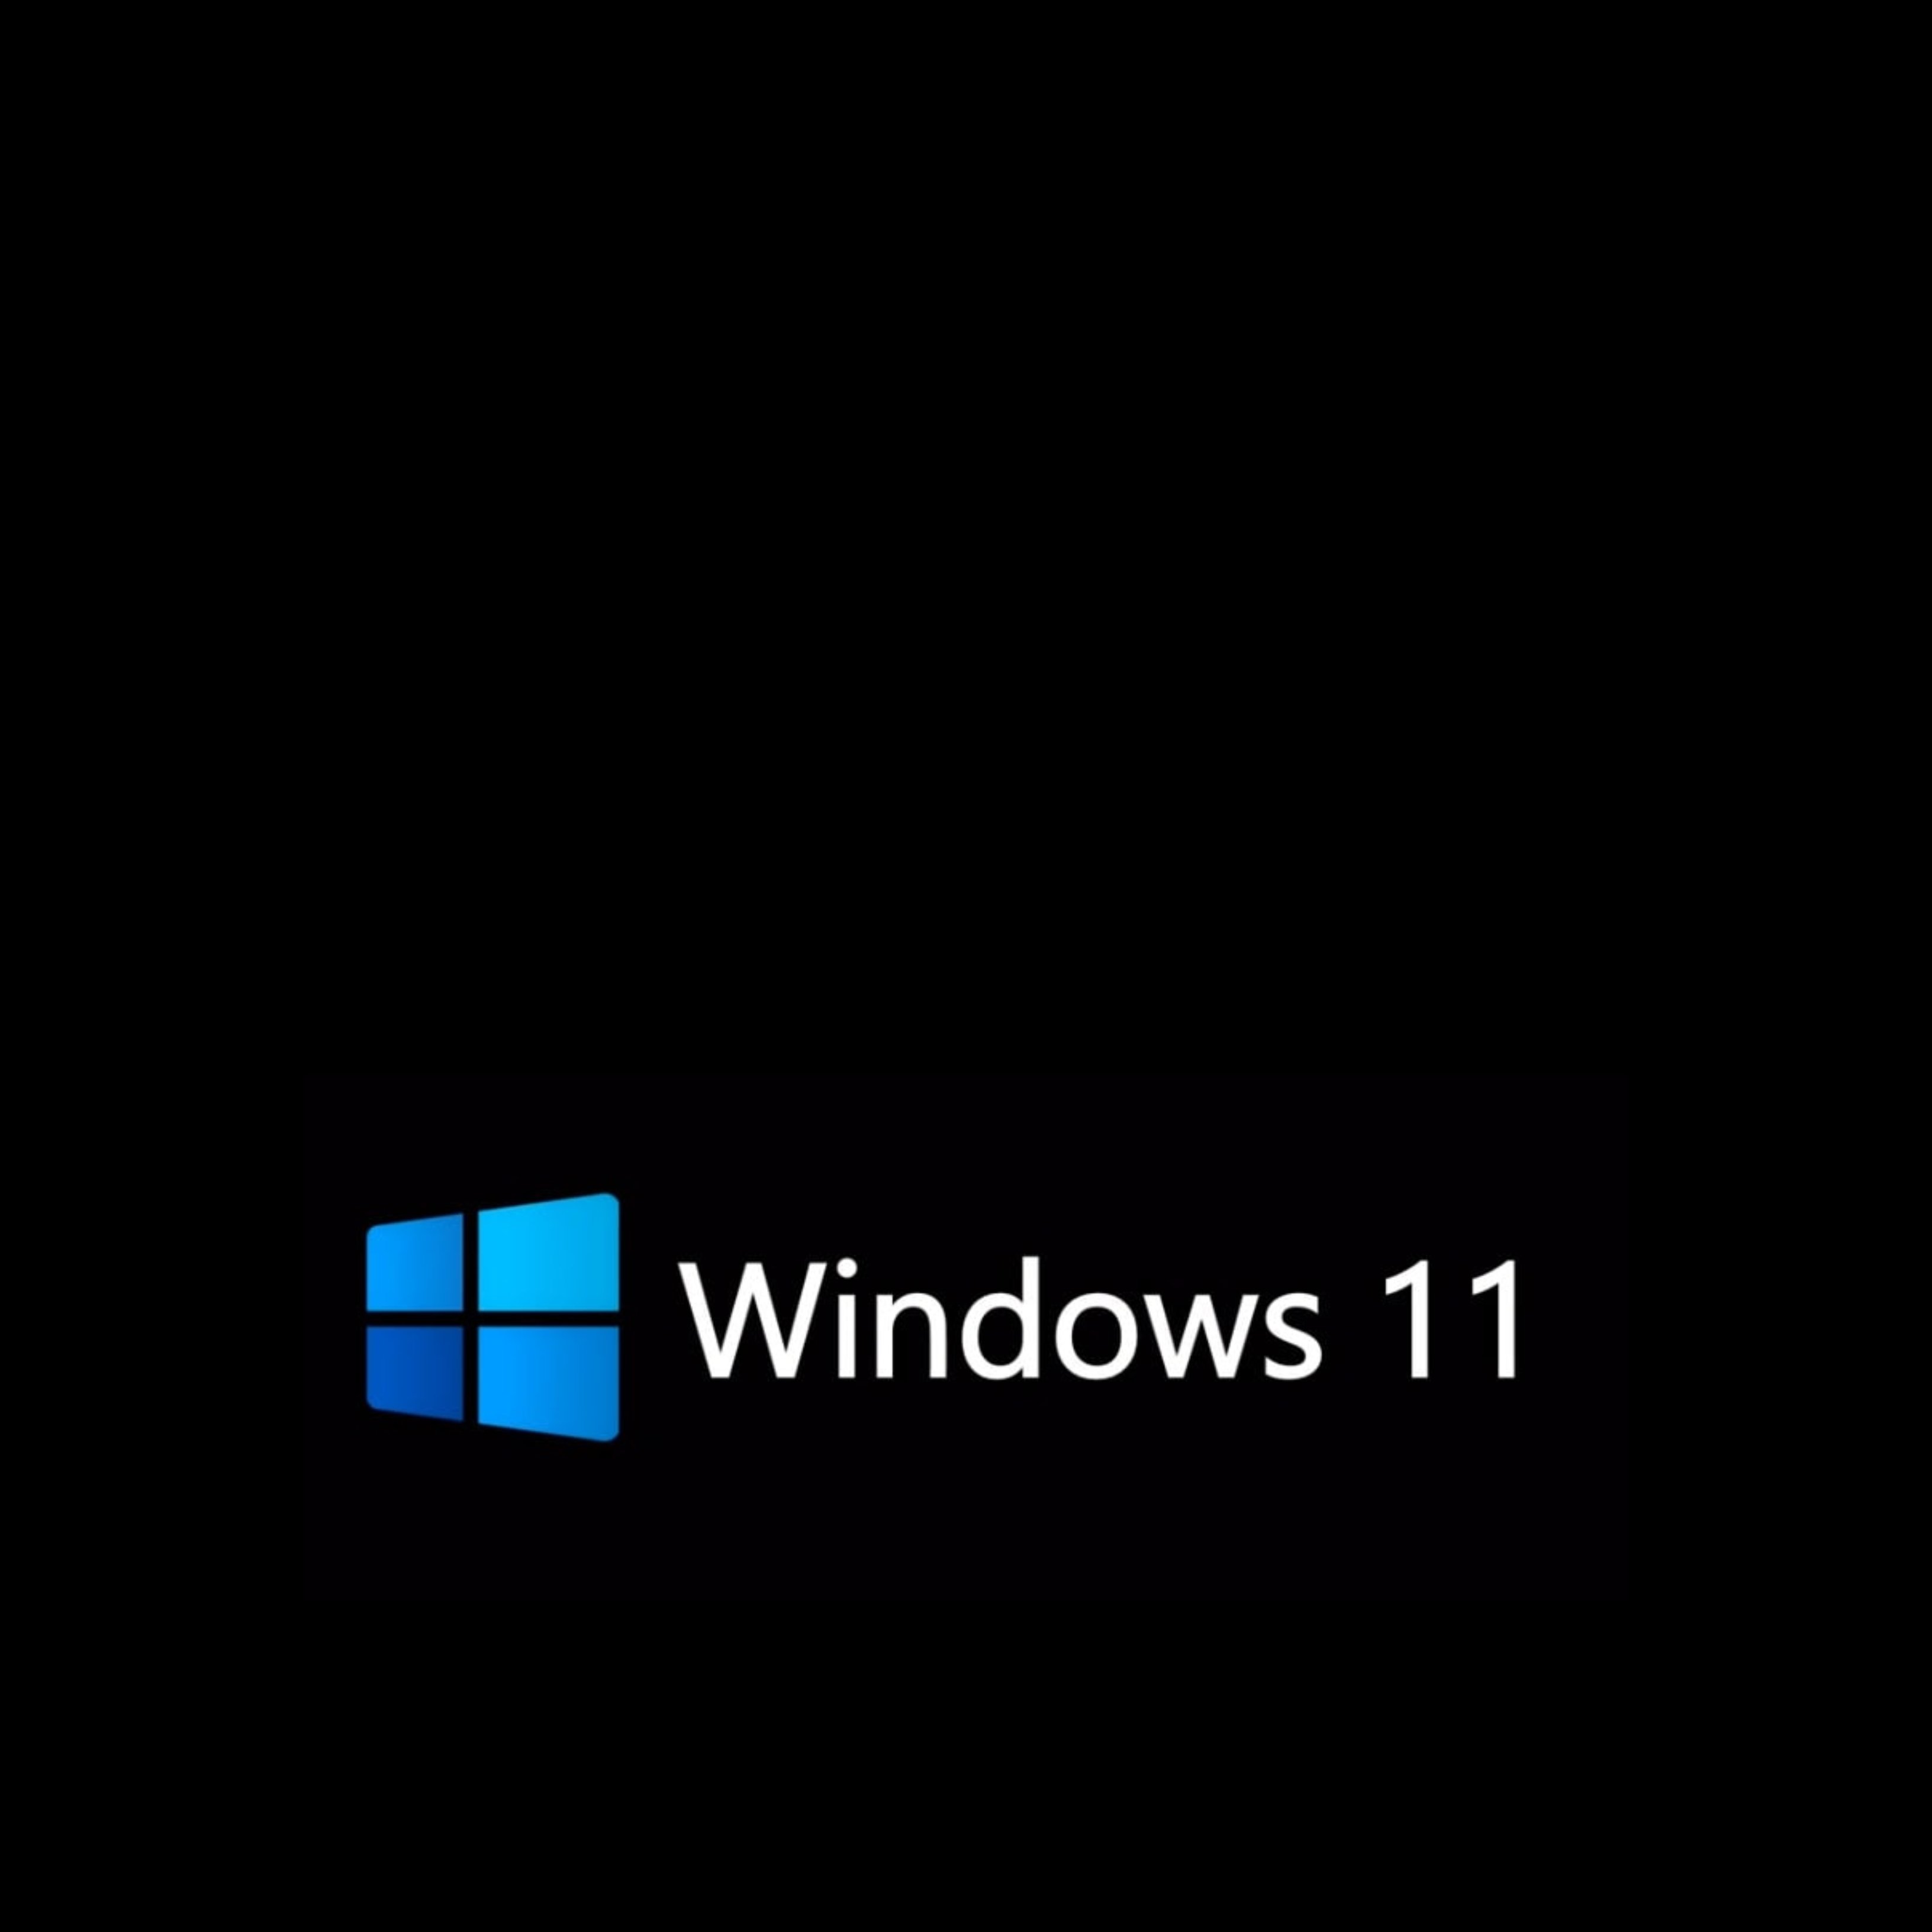 Comprueba si tu ordenador es compatible con el nuevo Windows 11